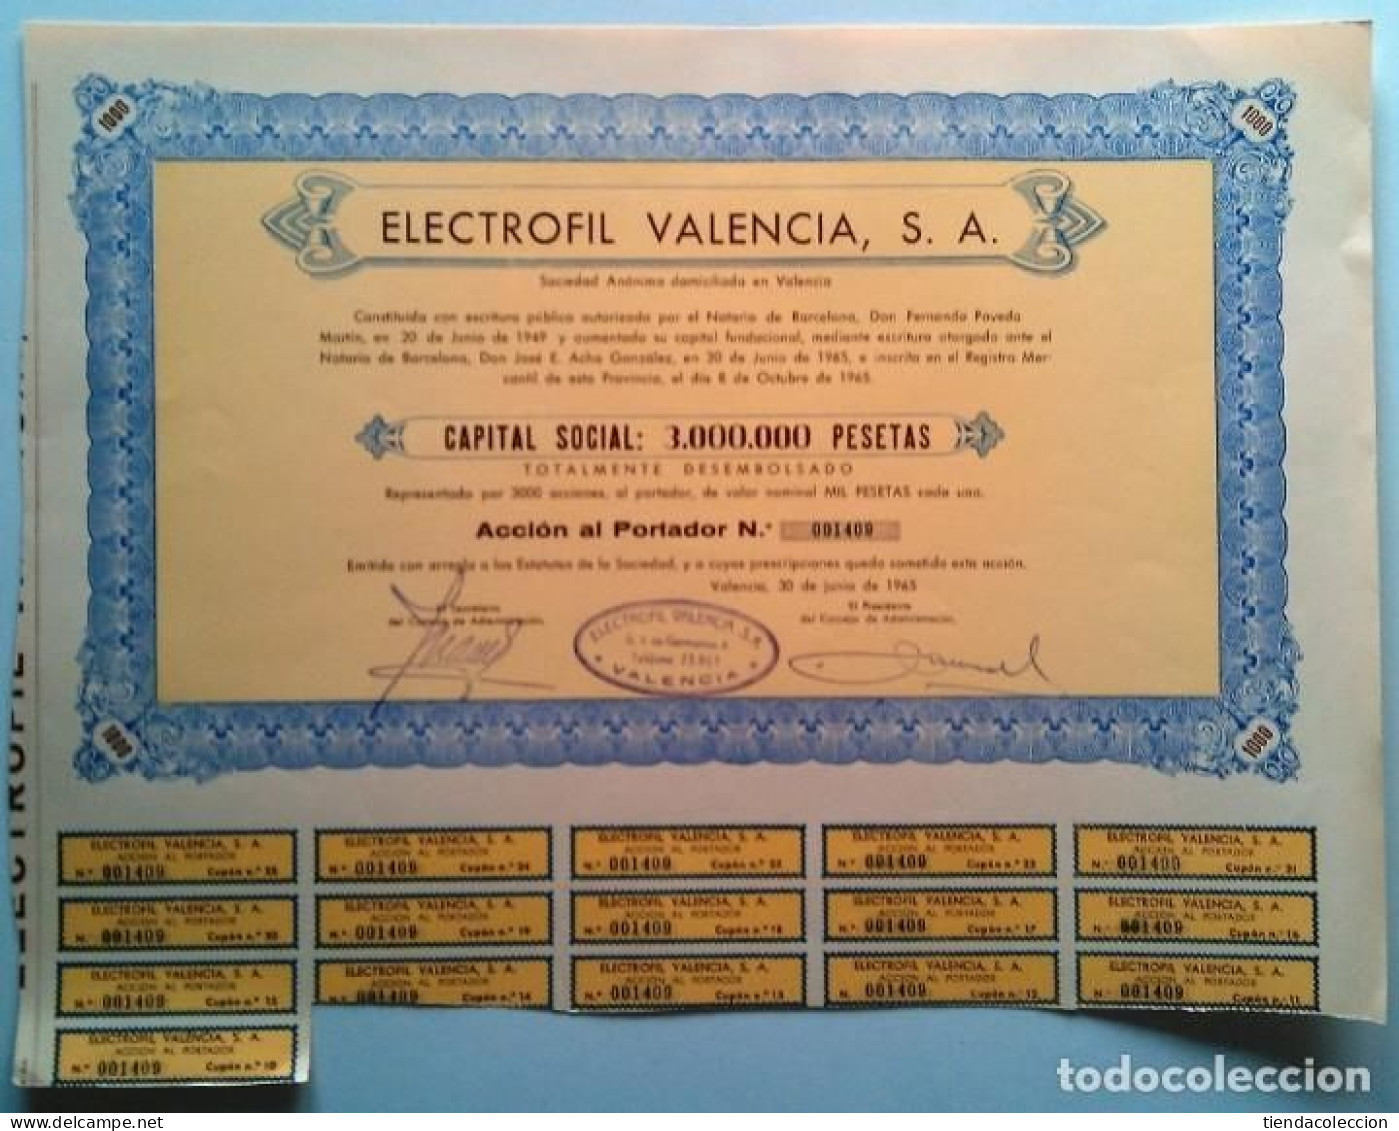 Electrofil Valencia, S. A. - Elettricità & Gas